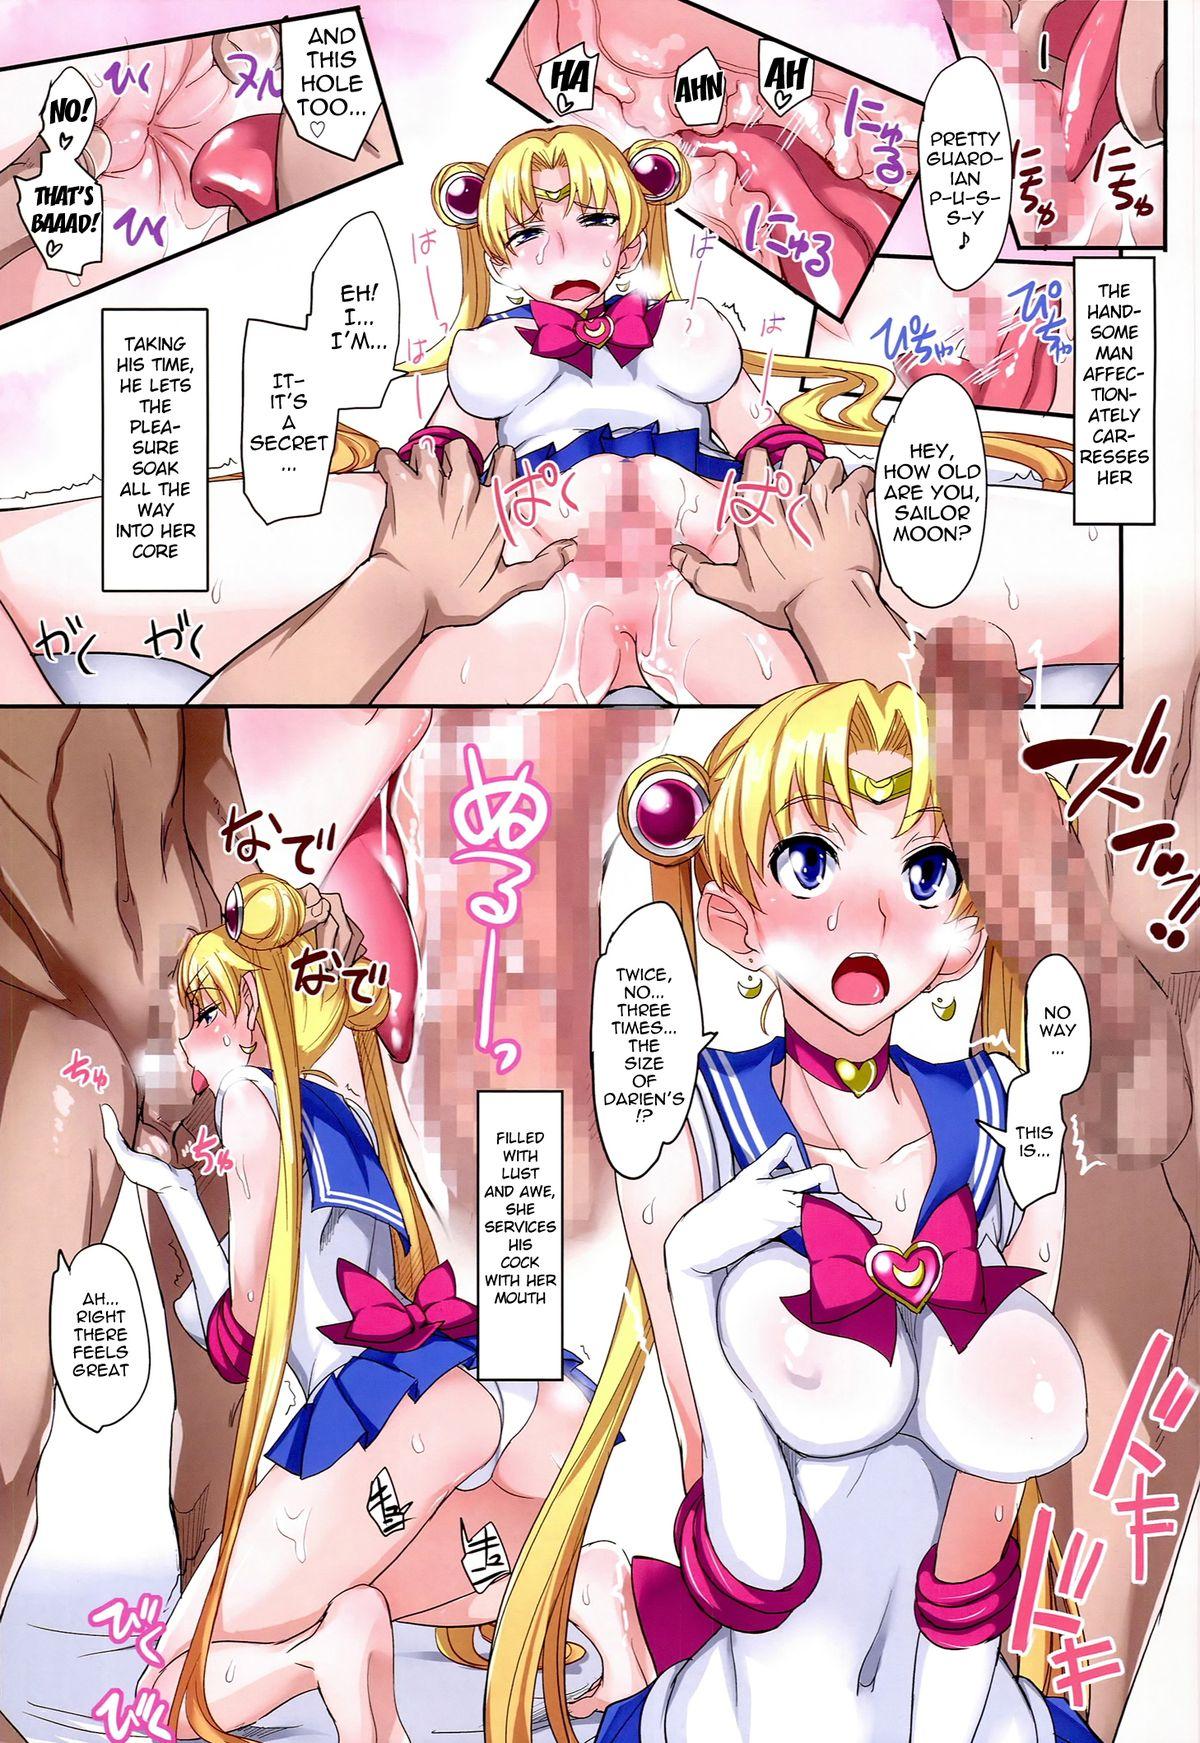 Alone Getsu Ka Sui Moku Kin Do Nichi Full Color 3 - Sailor moon Rabo - Page 11